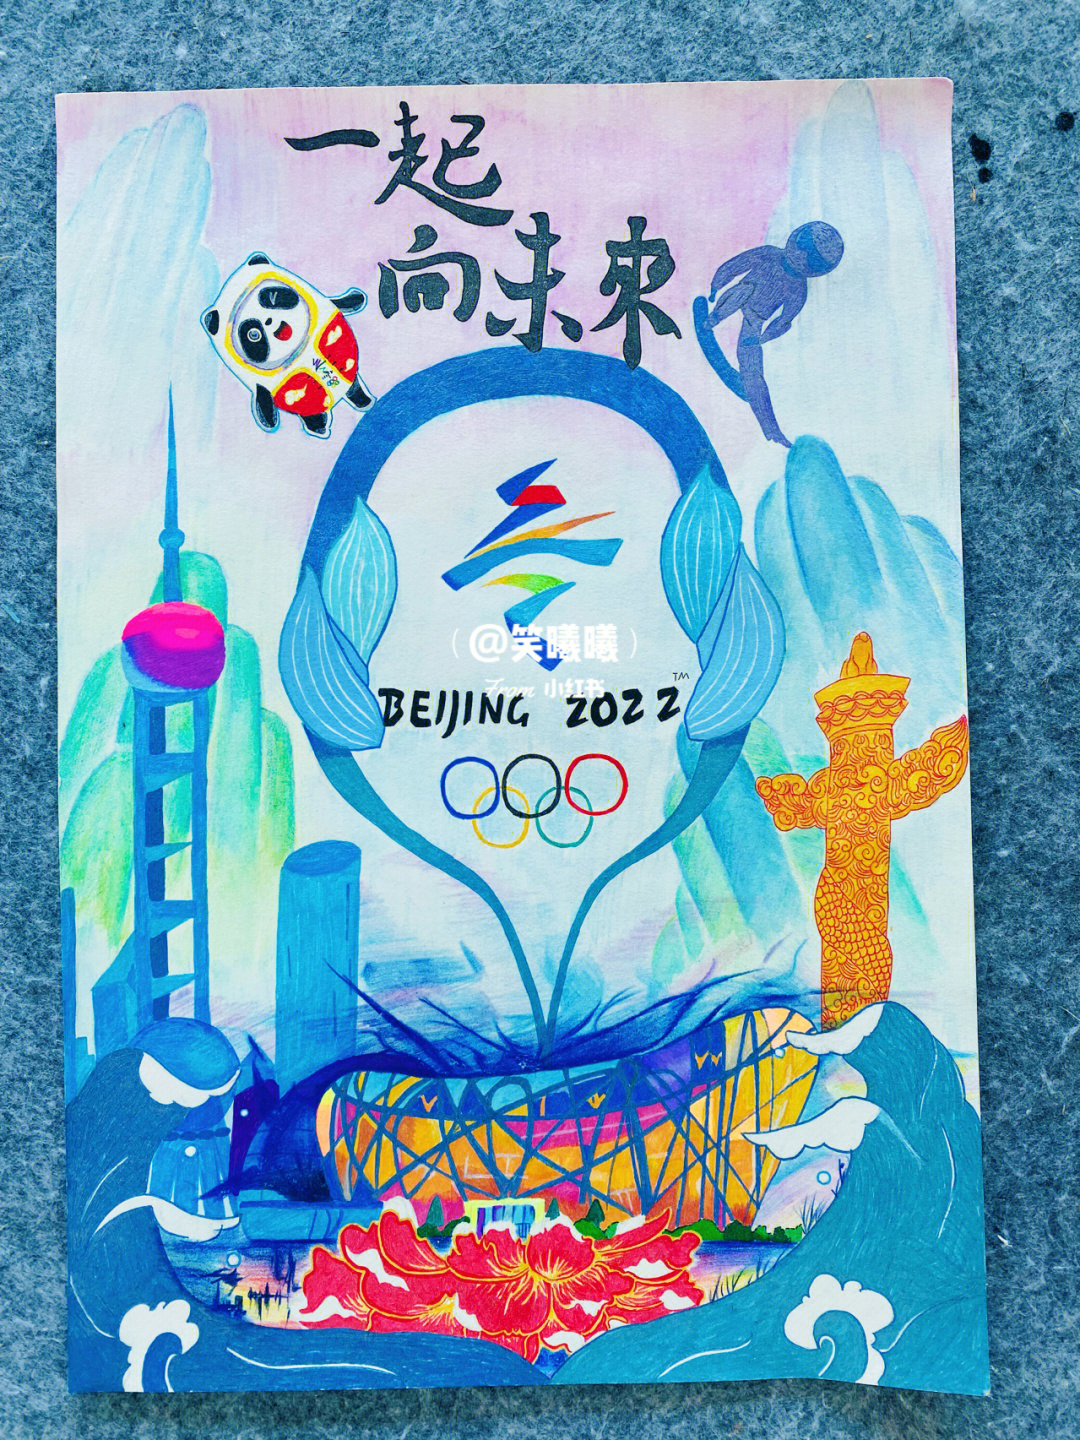 北京冬奥会宣传画儿童图片